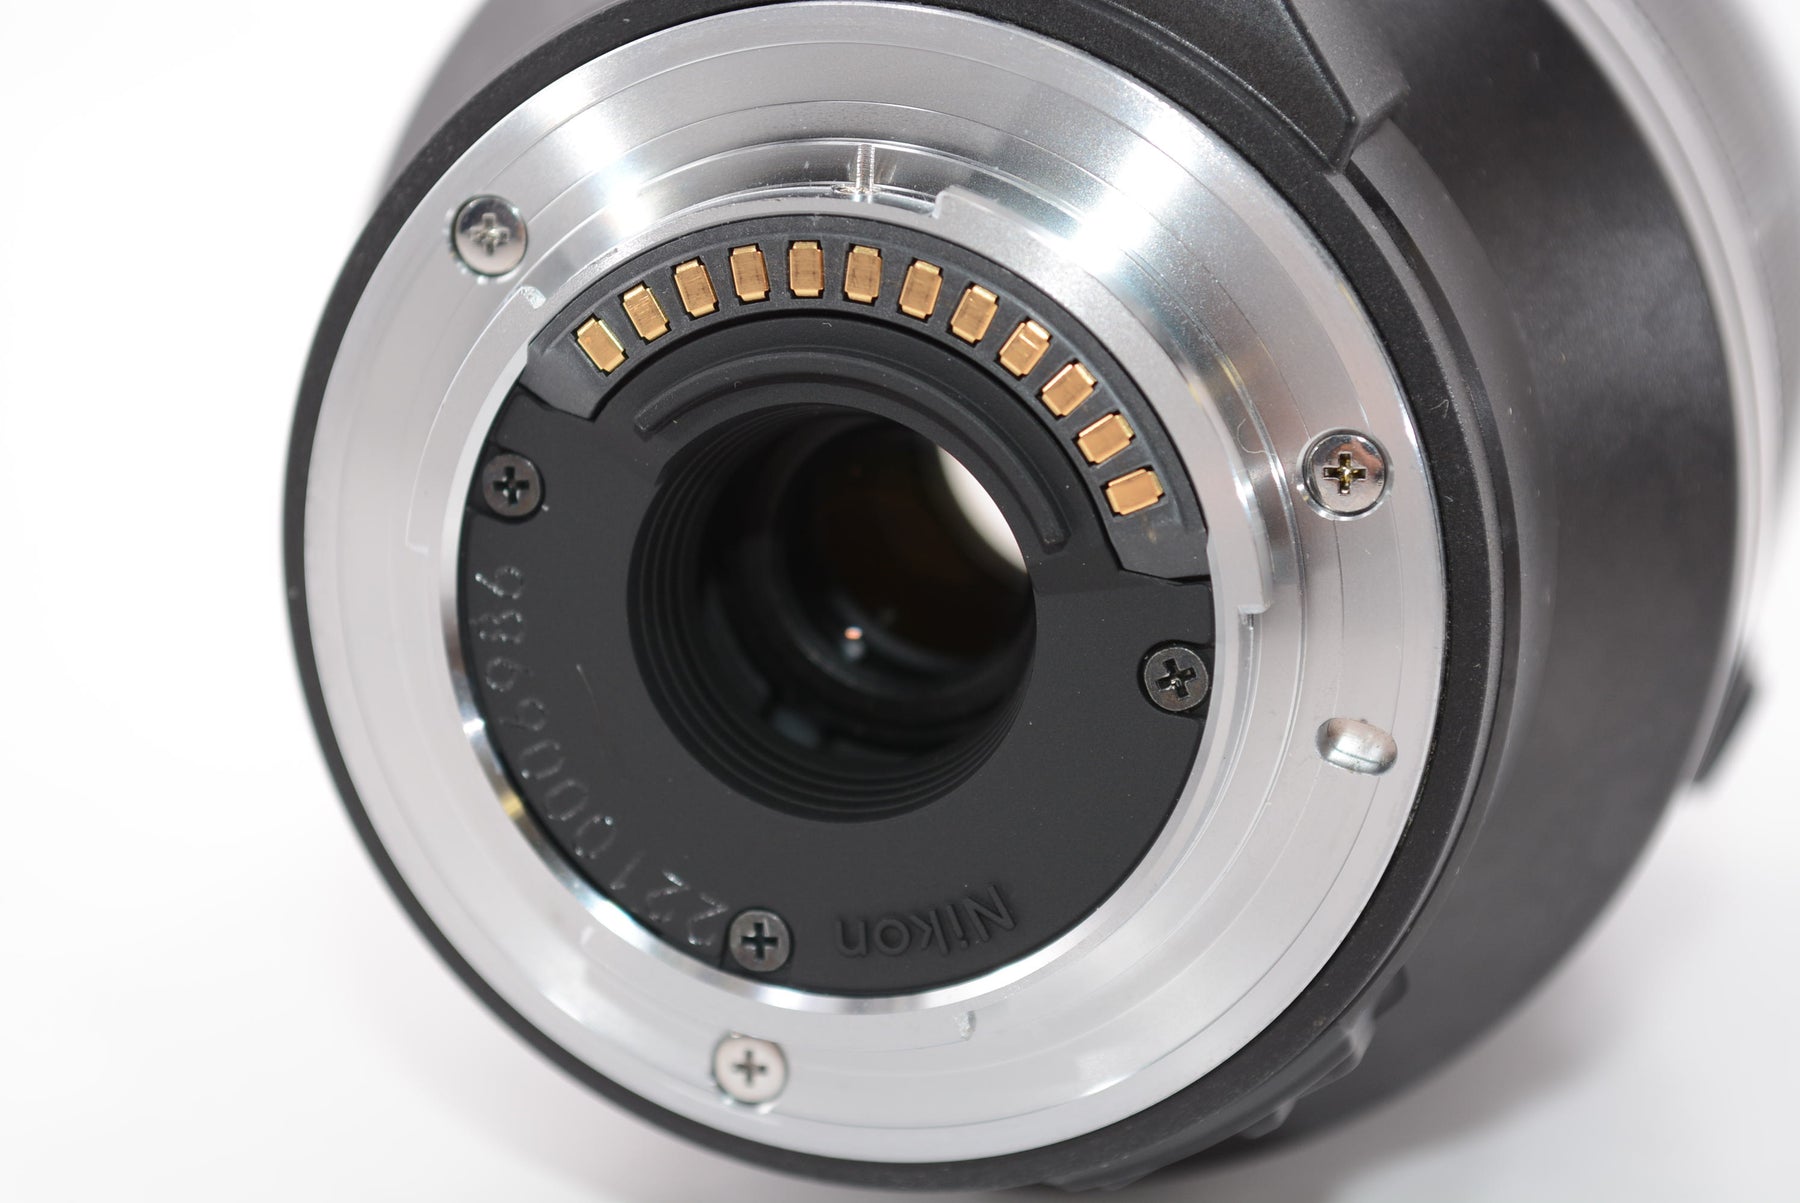 【外観並級】Nikon 望遠ズームレンズ1 NIKKOR VR 70-300mm f/4.5-5.6 1NVR70-300